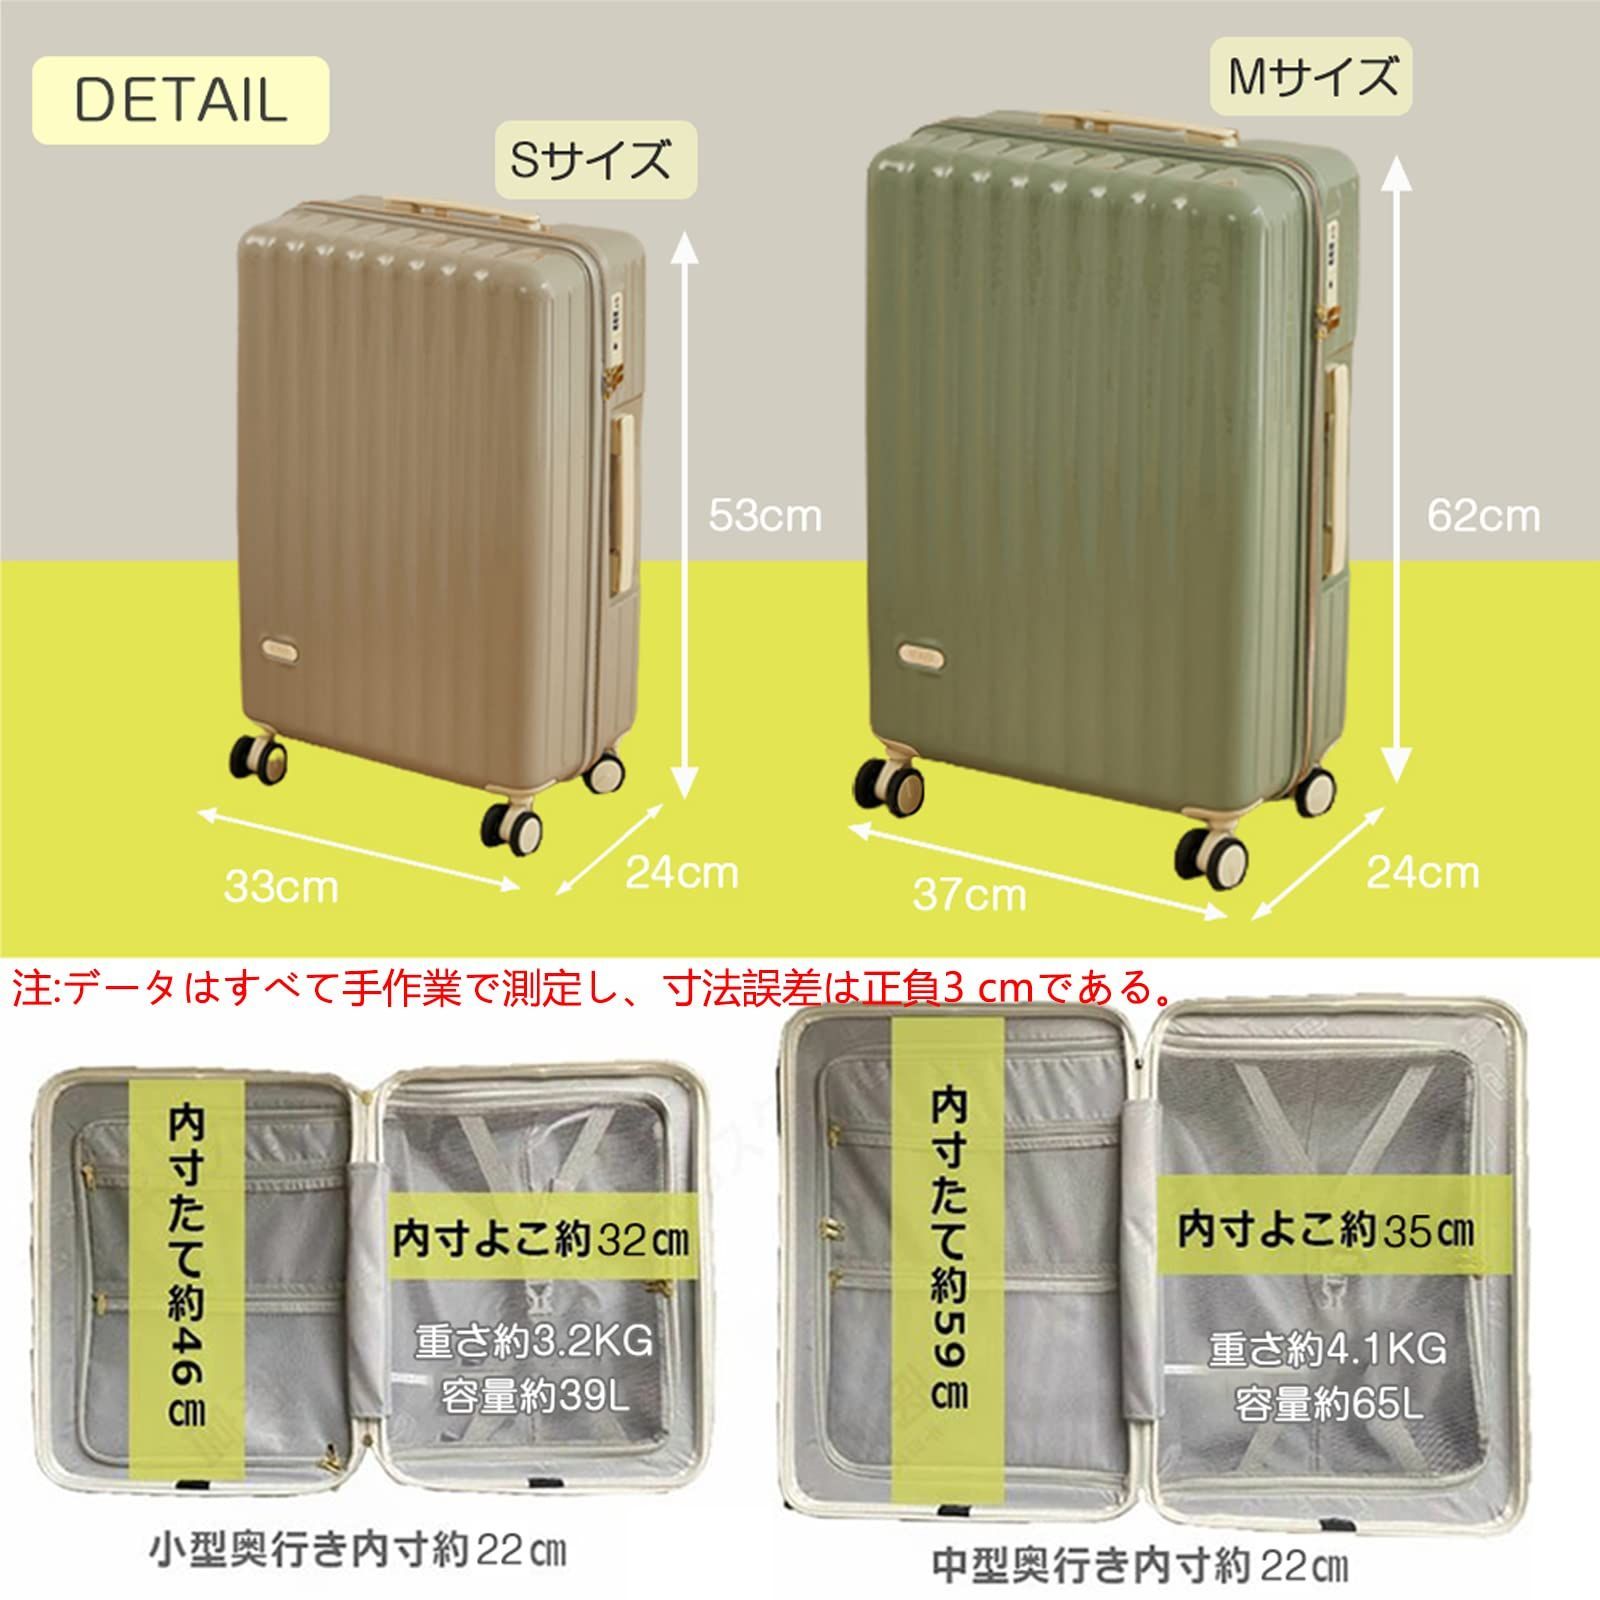 待望☆】 軽量Mサイズ 静音8輪 キャリーバッグ スーツケース キャリーケース グリーン